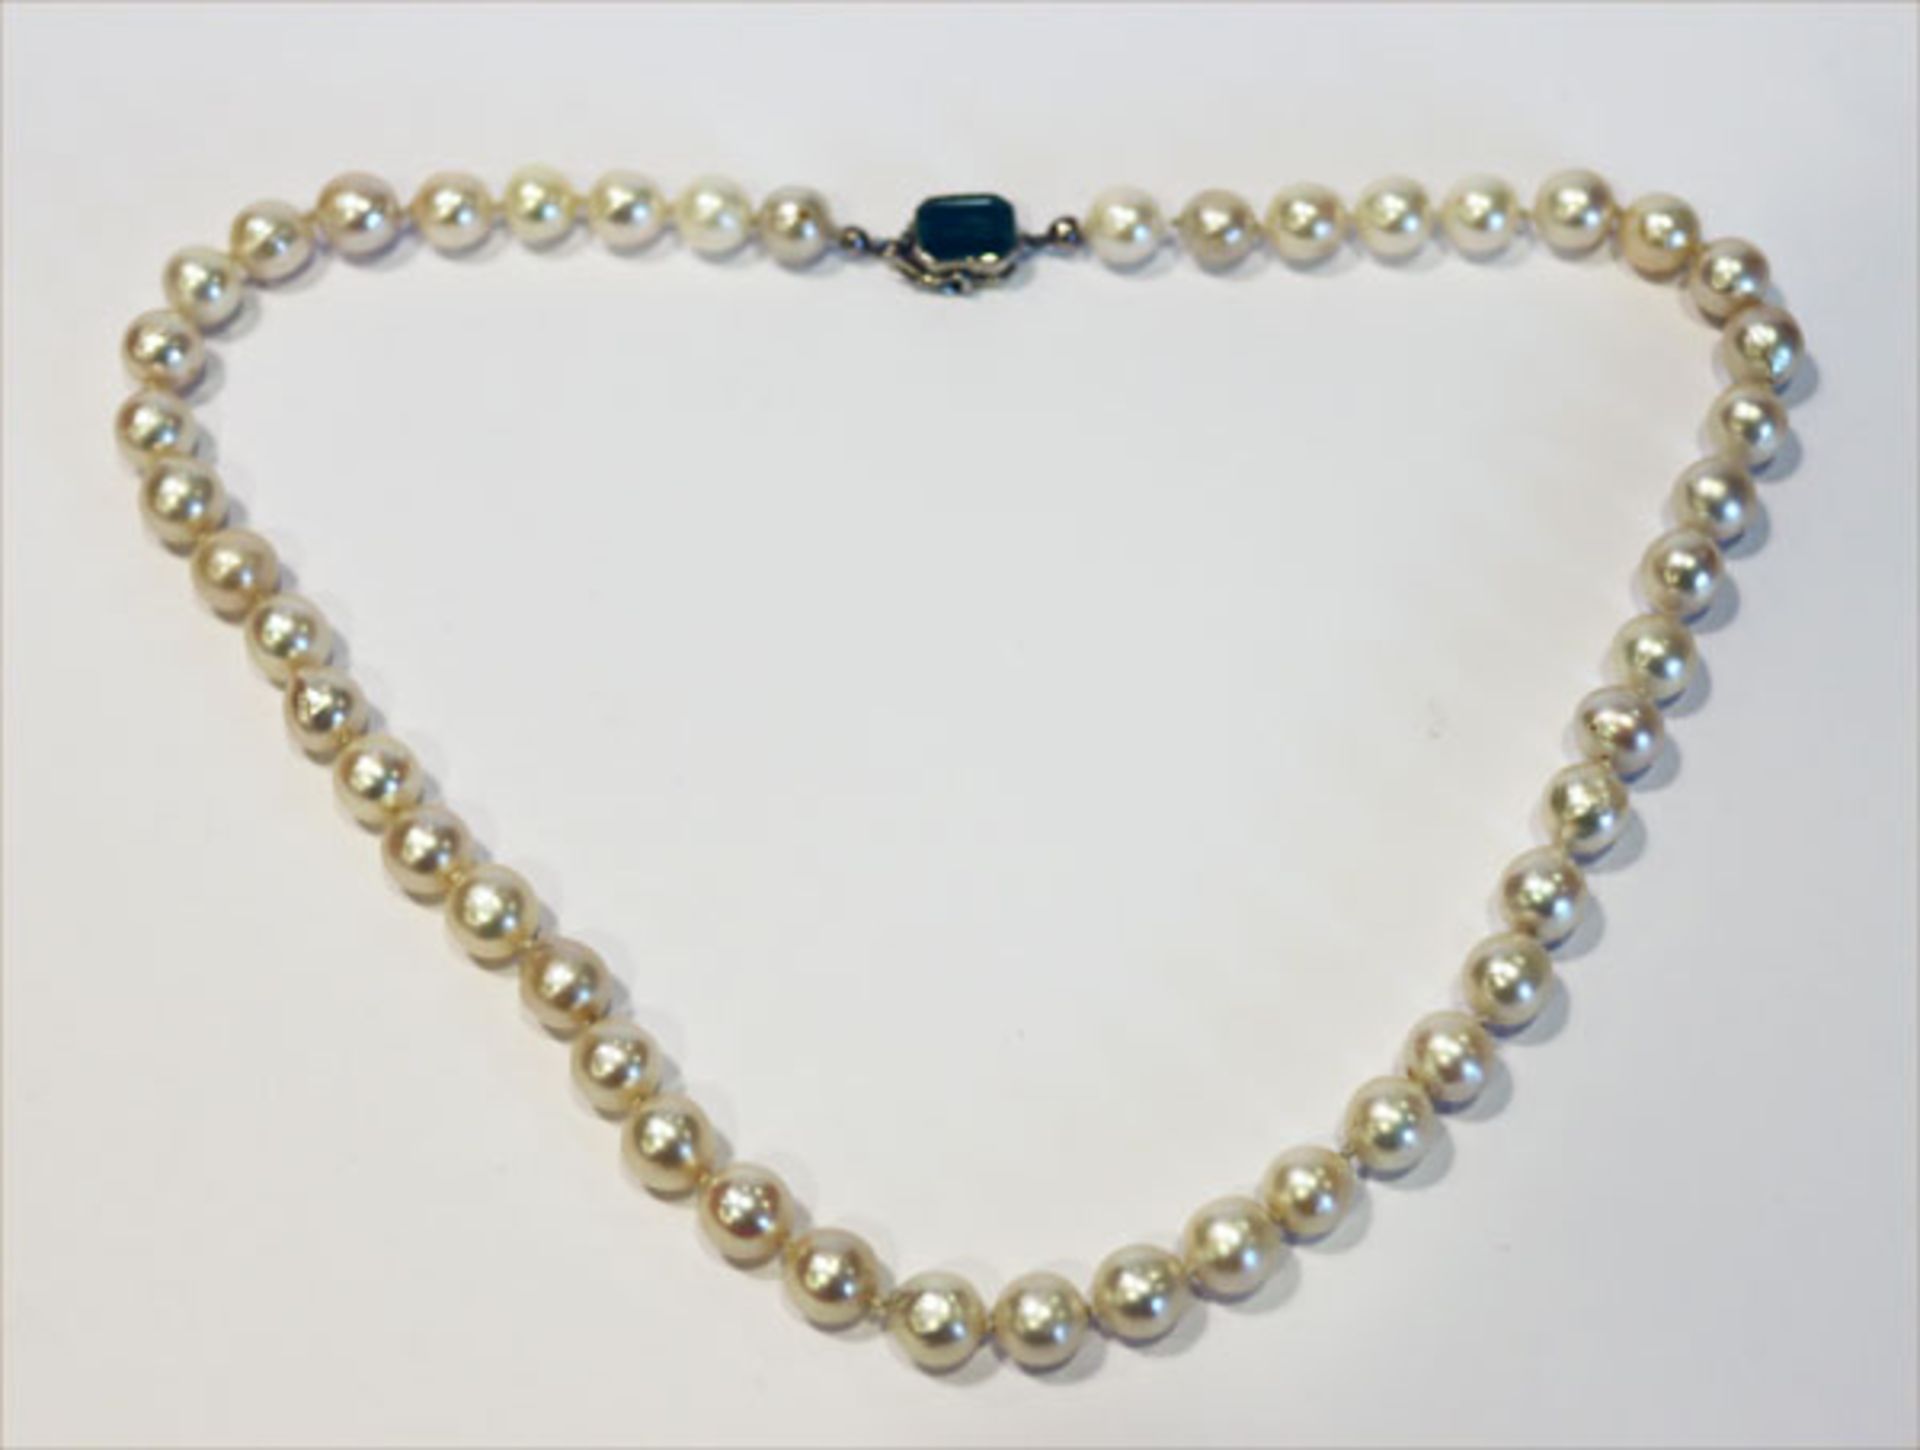 Perlenkette mit 14 k geprüfter Weißgold Schließe mit Turmalin, L 42 cm